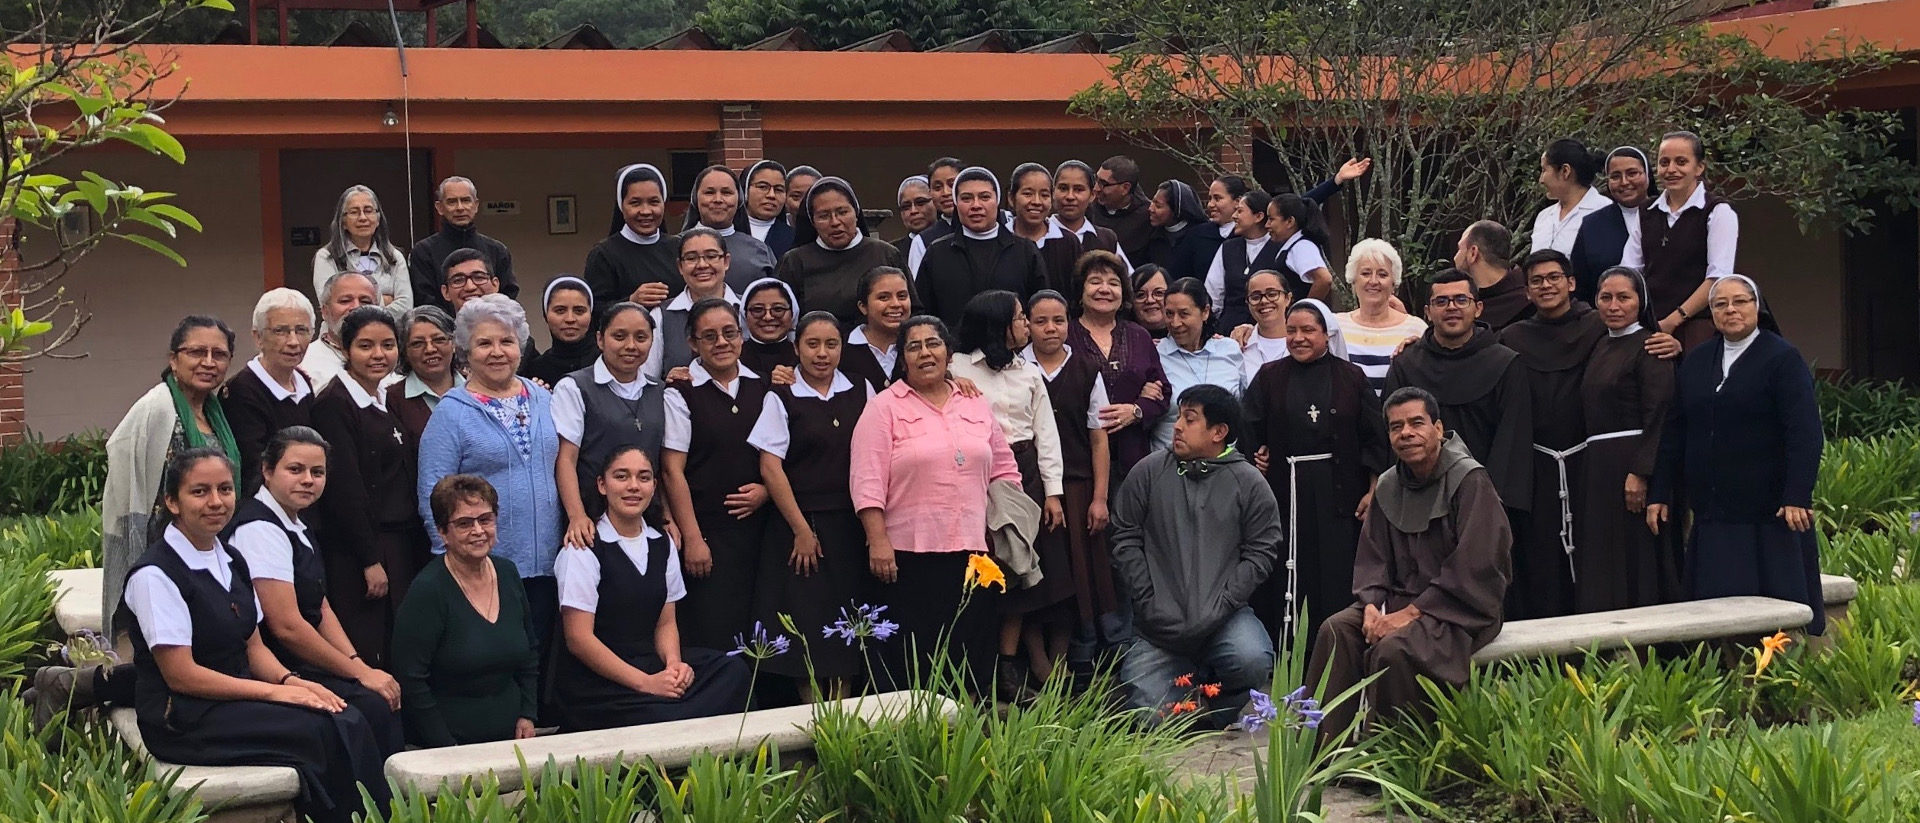 Intensivbildung für junge Schwestern und Brüder in Guatemala.